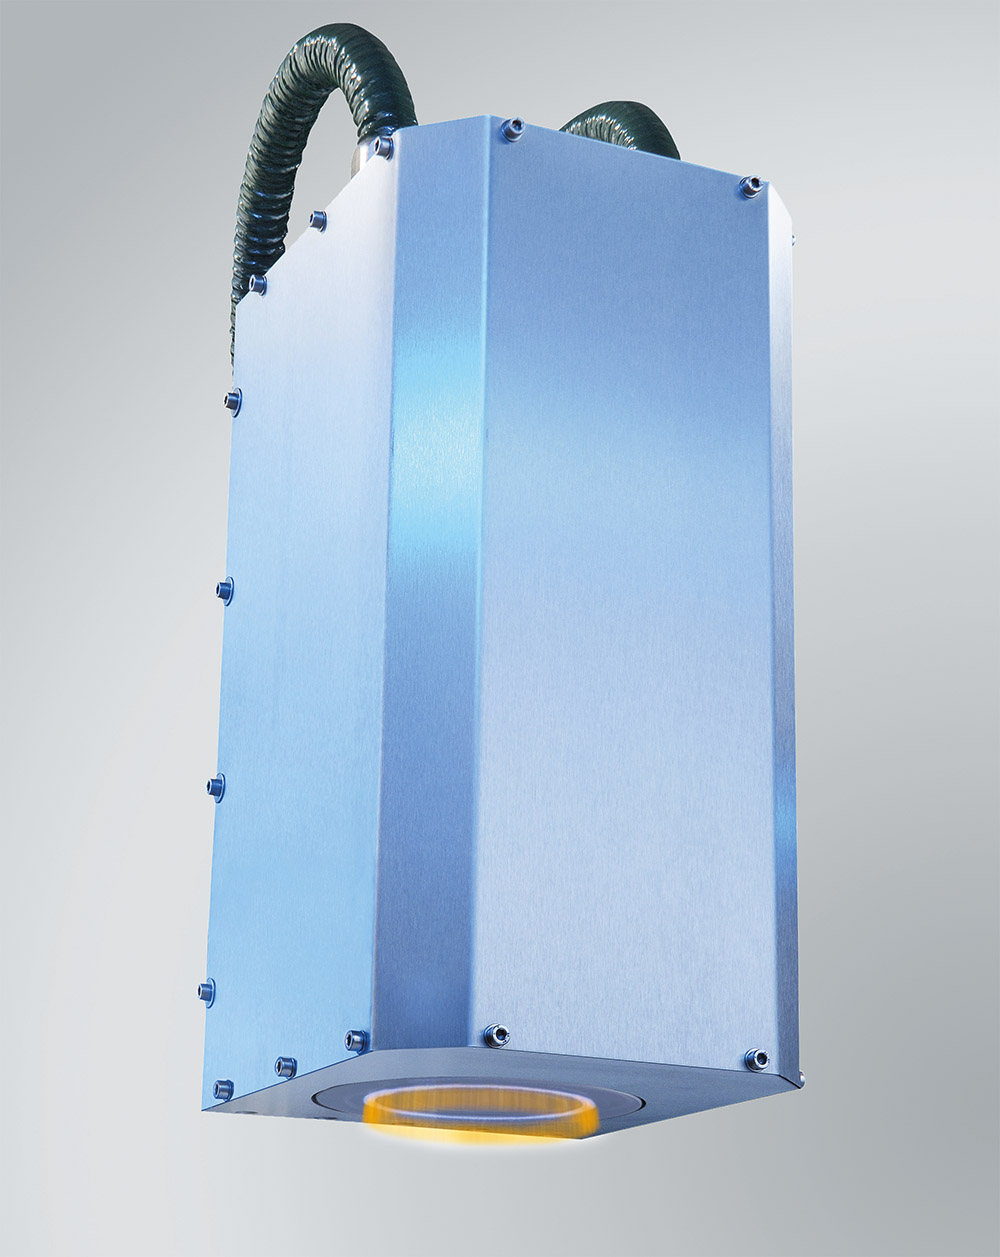 Plasmaerzeuger RD1010  zur Vorbehandlung von Folien und flächigen Bauteilen.